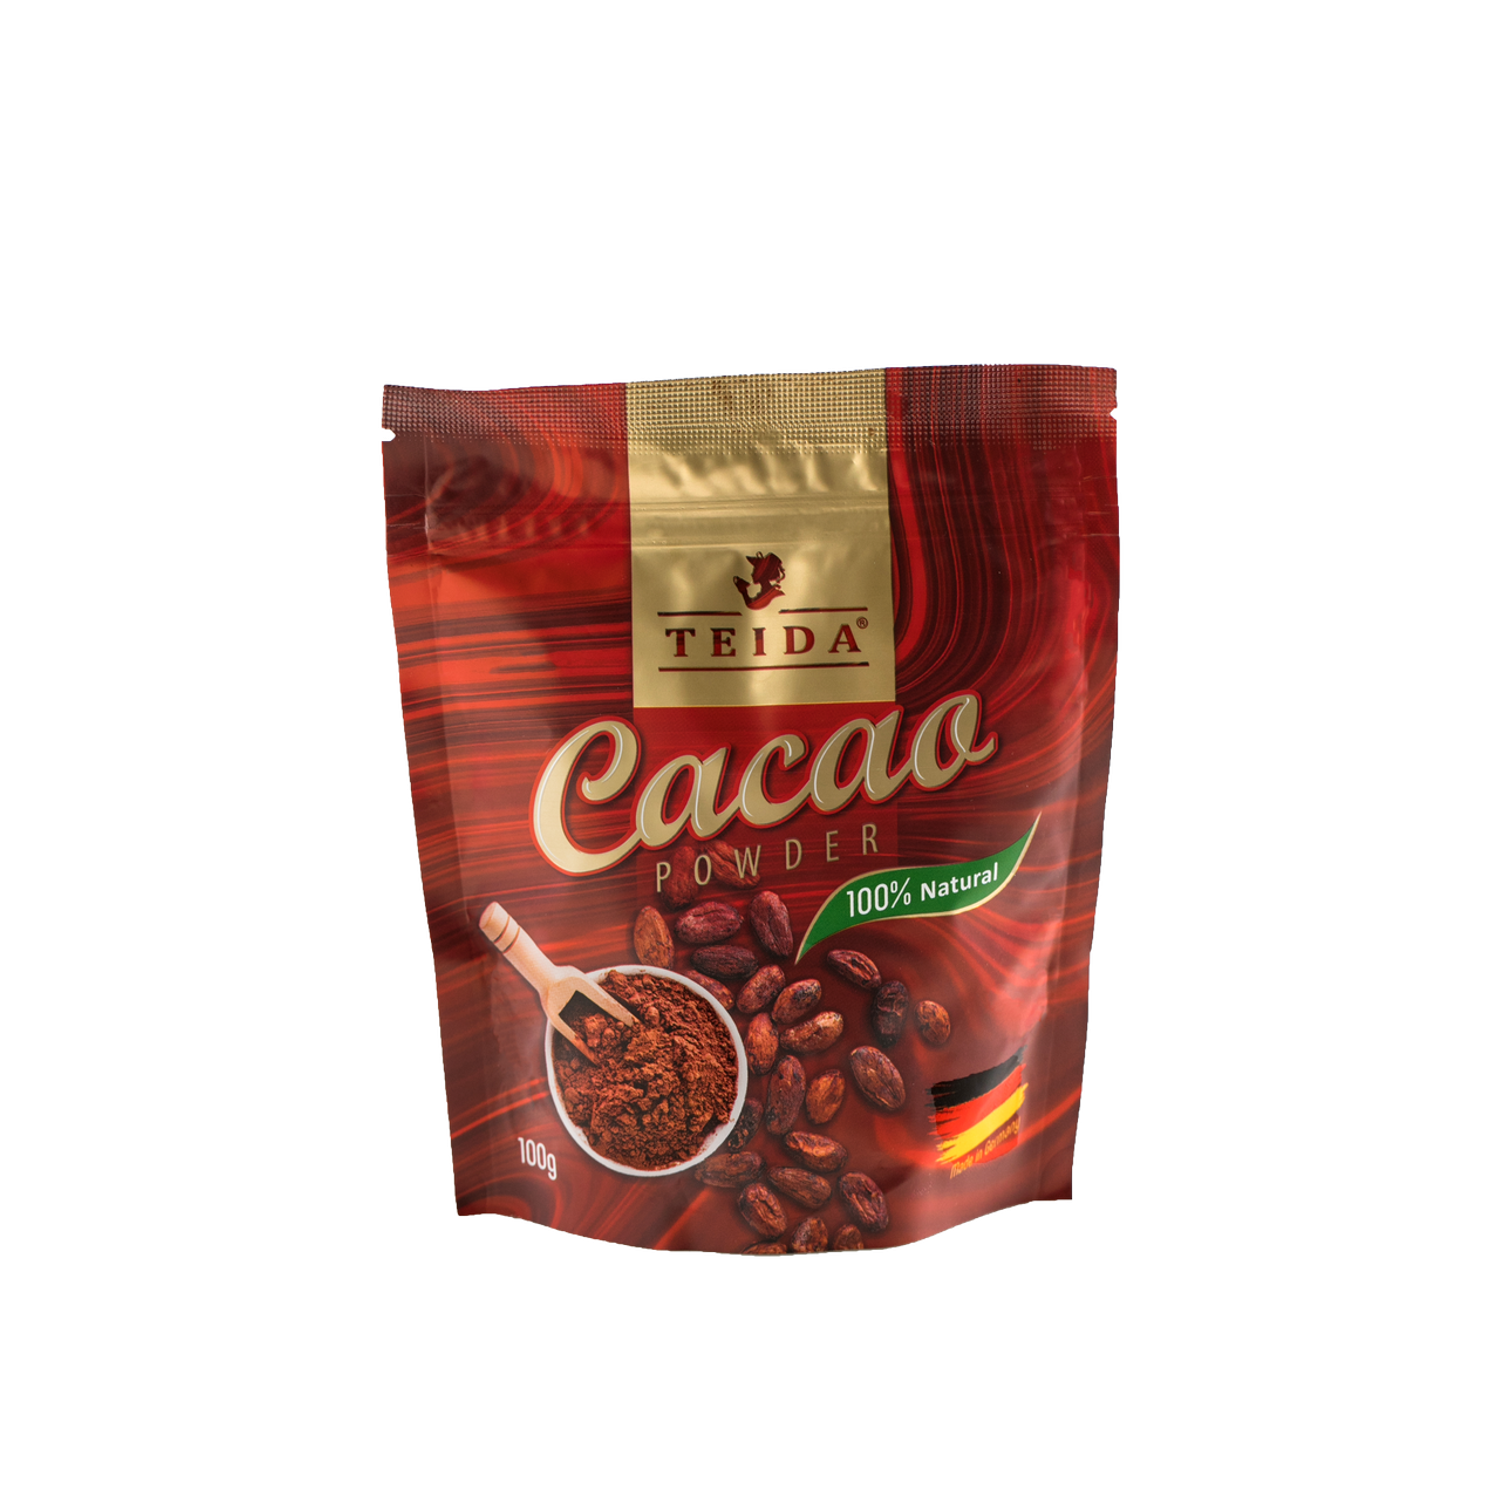 Какао порошок TEIDA алкализованный Cacao Powder 100 гр - фото 1